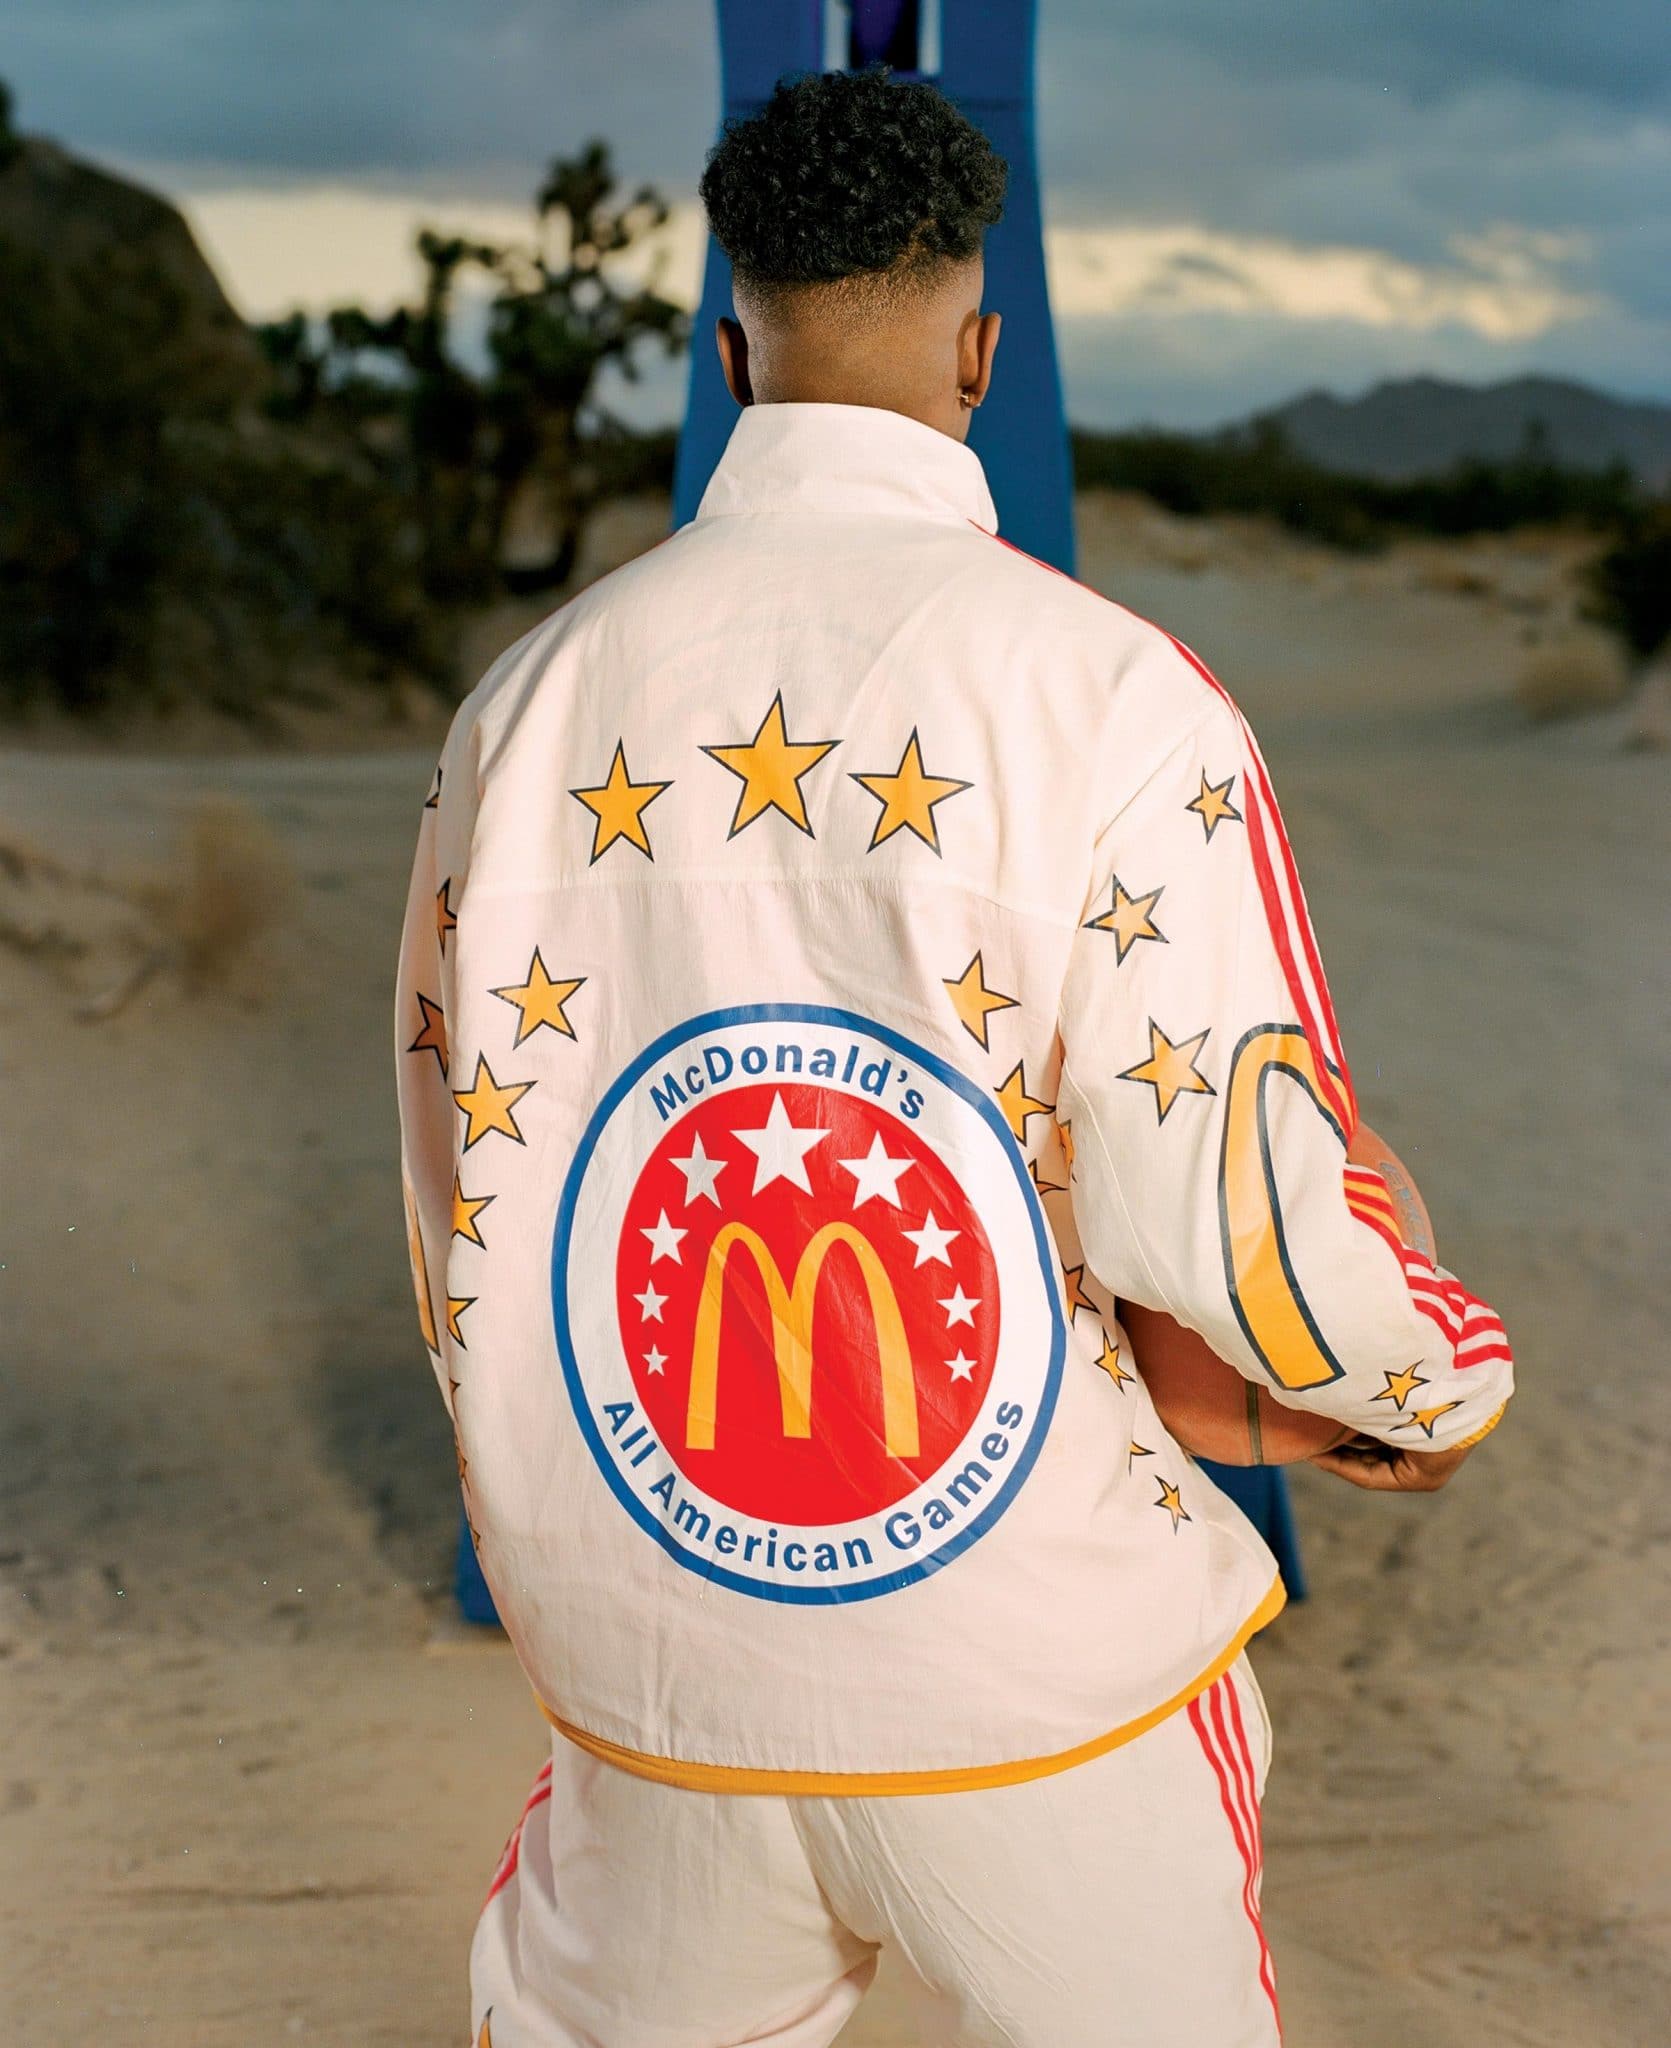 Eric Emanuel x adidas x McDonald's All American Games